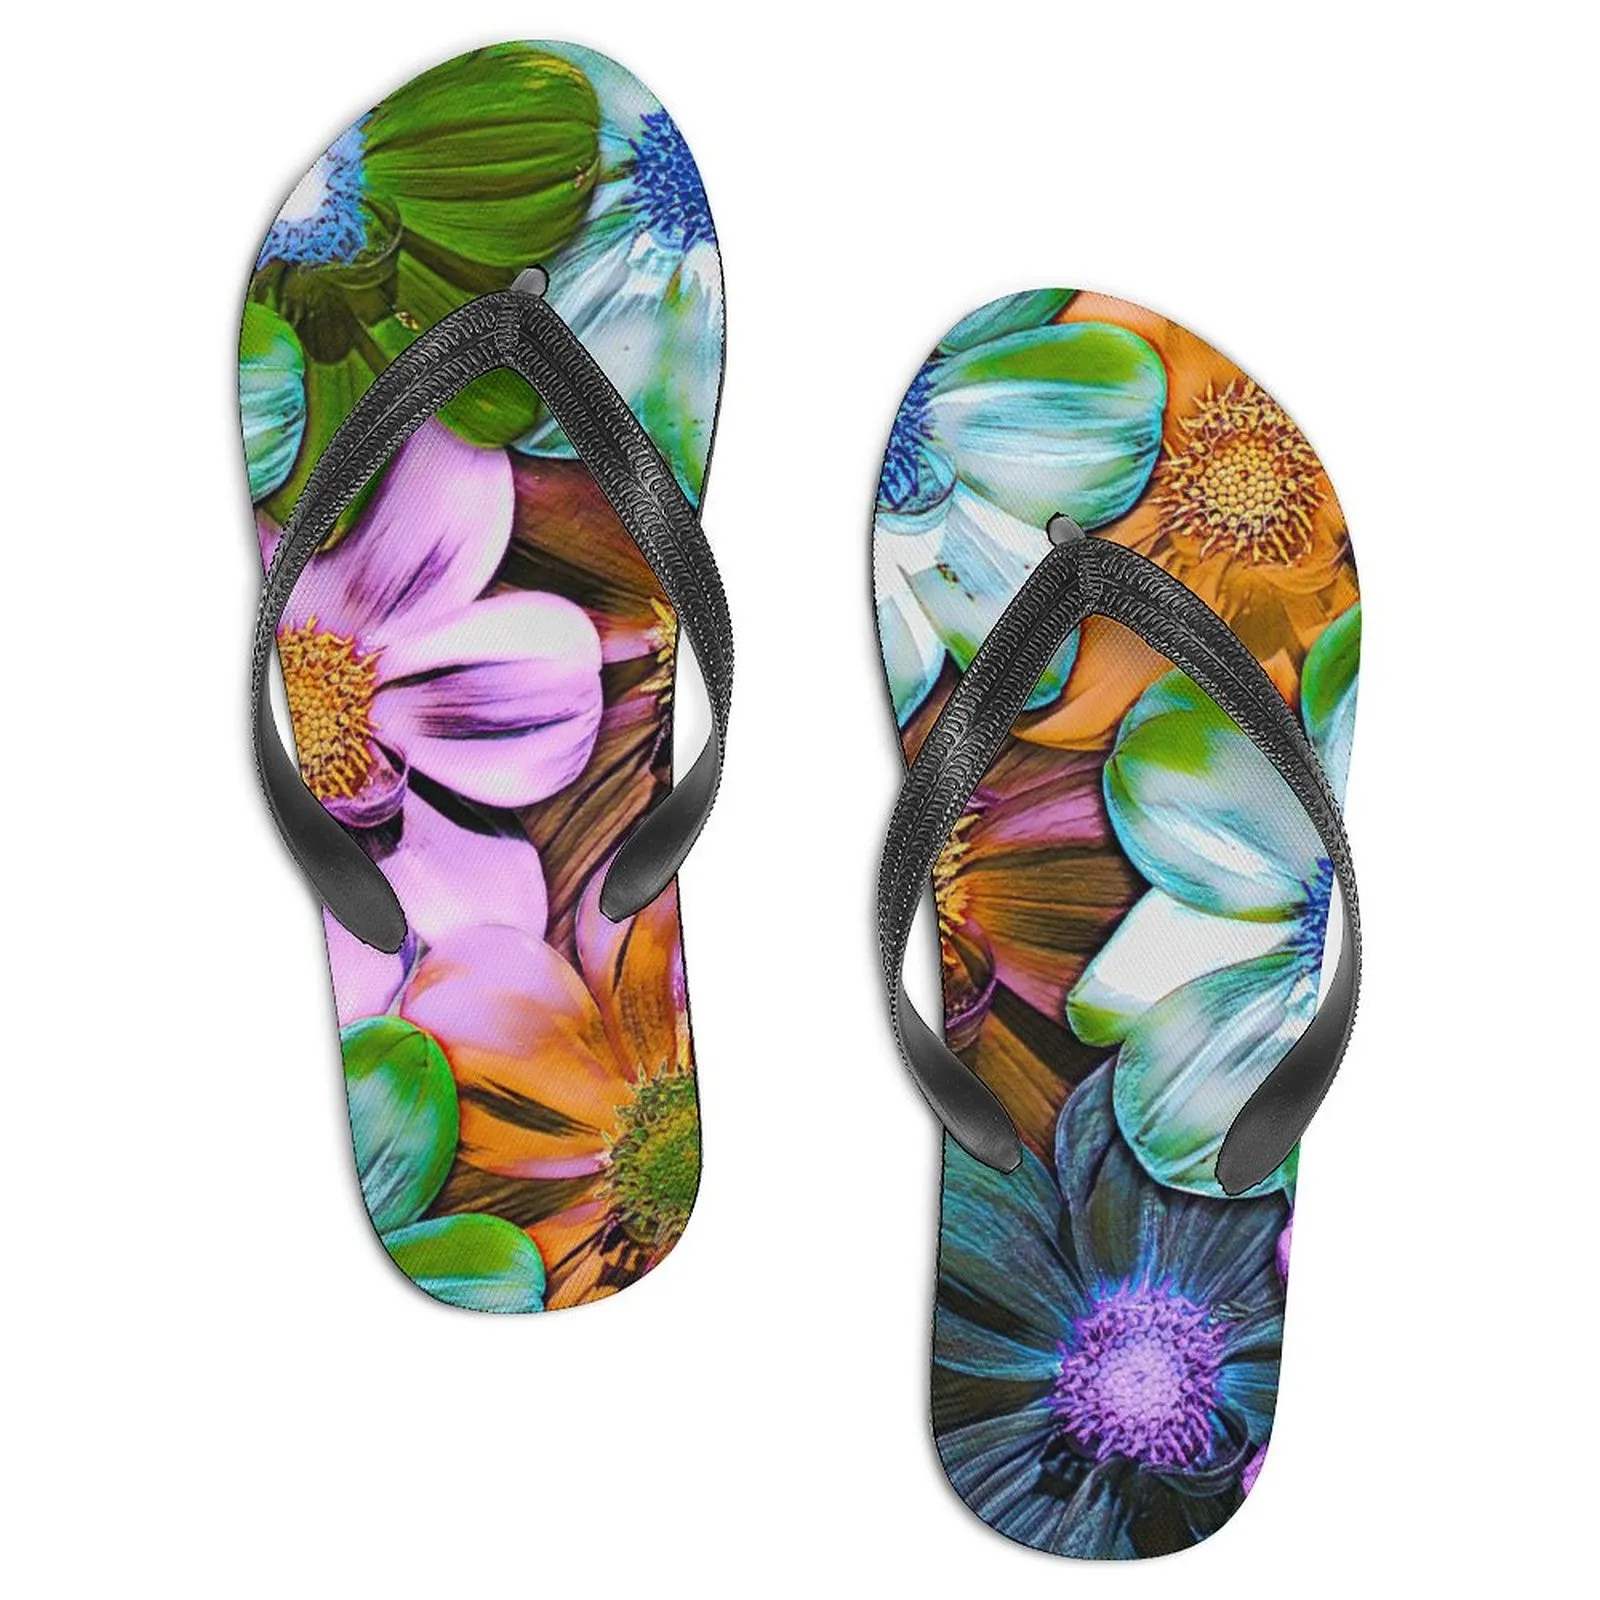 Slipper glisses sandales motif personnalisé DIY Design Casual Chores Taille 39-46 Flowers-7001551